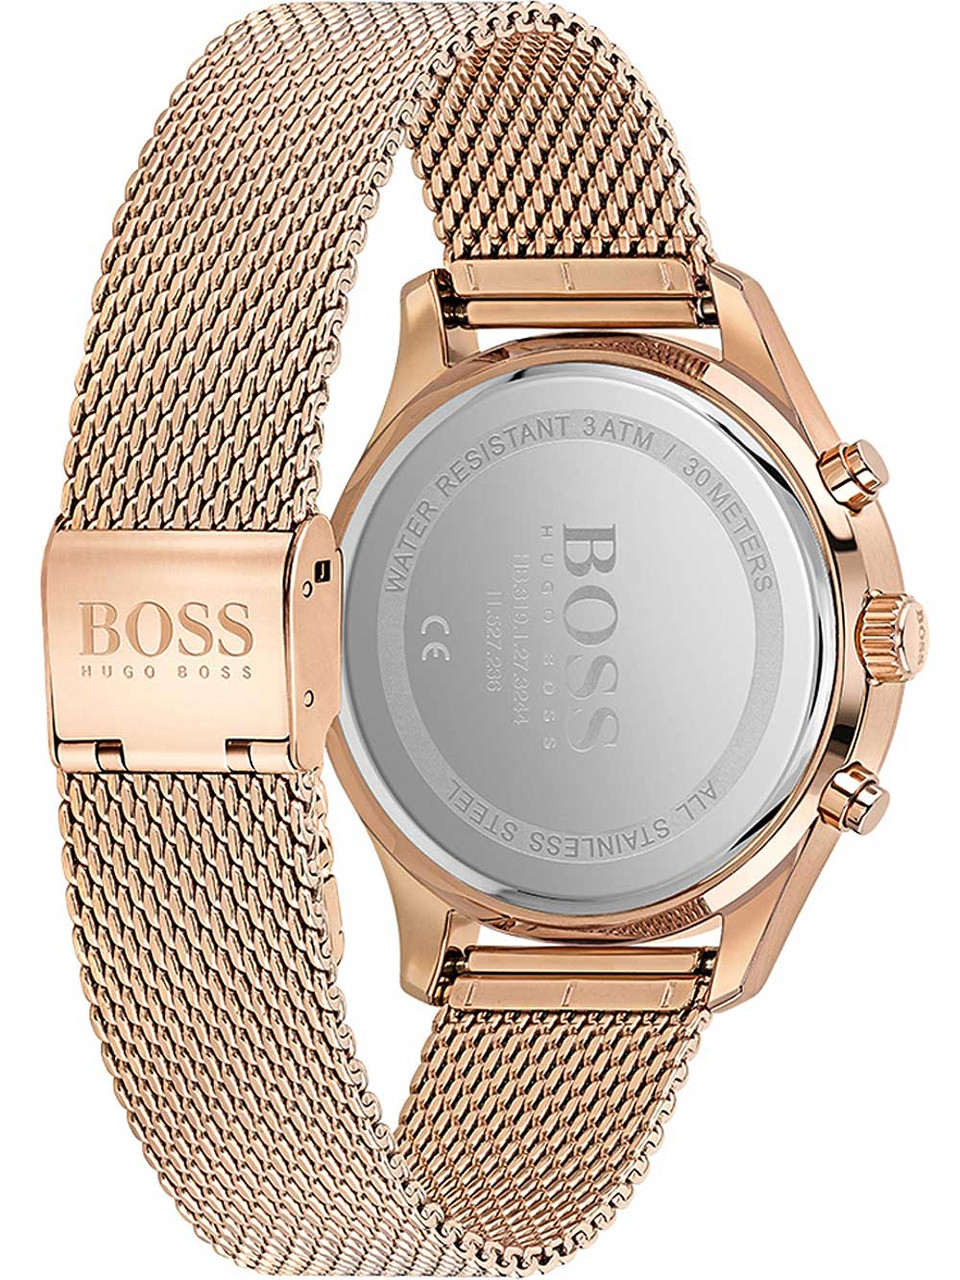 Hugo Boss 1513806 Associate chronograph 42mm 5 ATM - owlica | Genuine  Watches